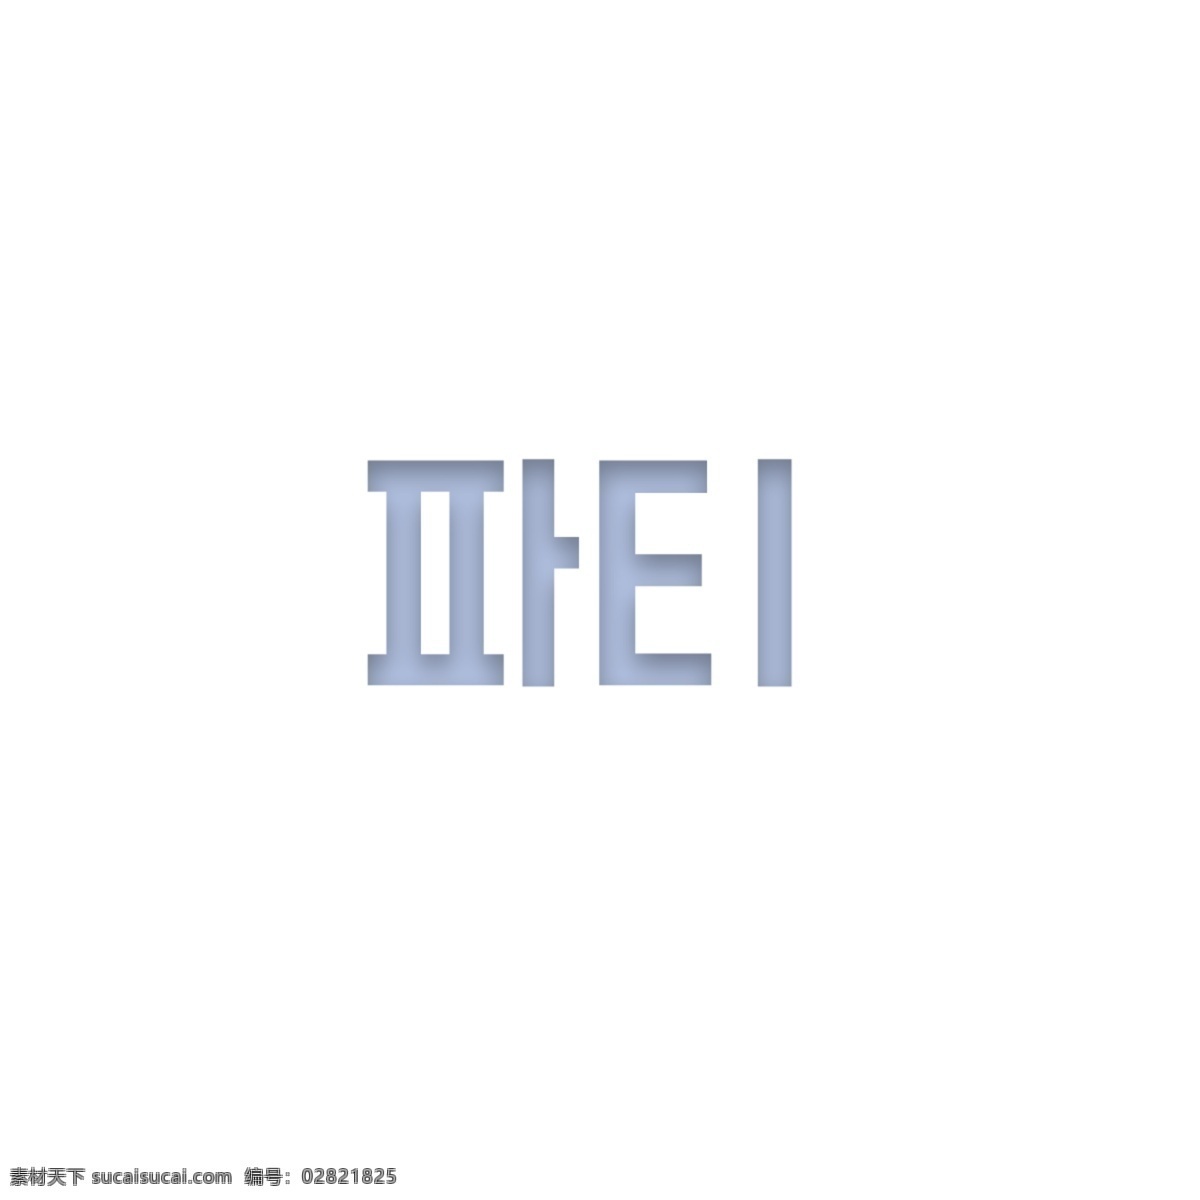 一个 简单 字体 字符 大学派对 韩文 字形 白色和蓝色 分子 可爱 背景 装饰 墙纸 海报 仙女 谢和